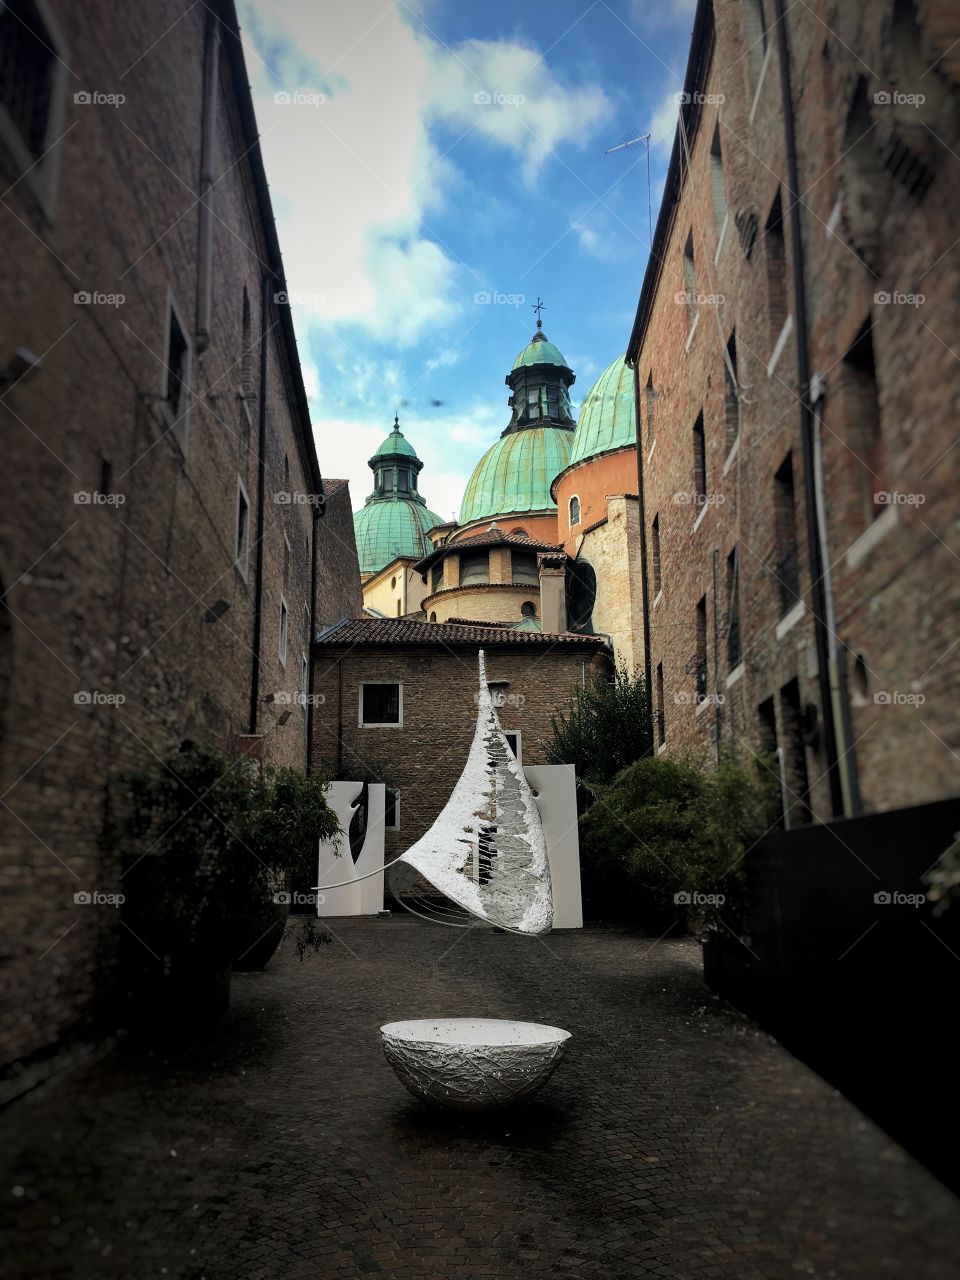 Art installment in Treviso Italy